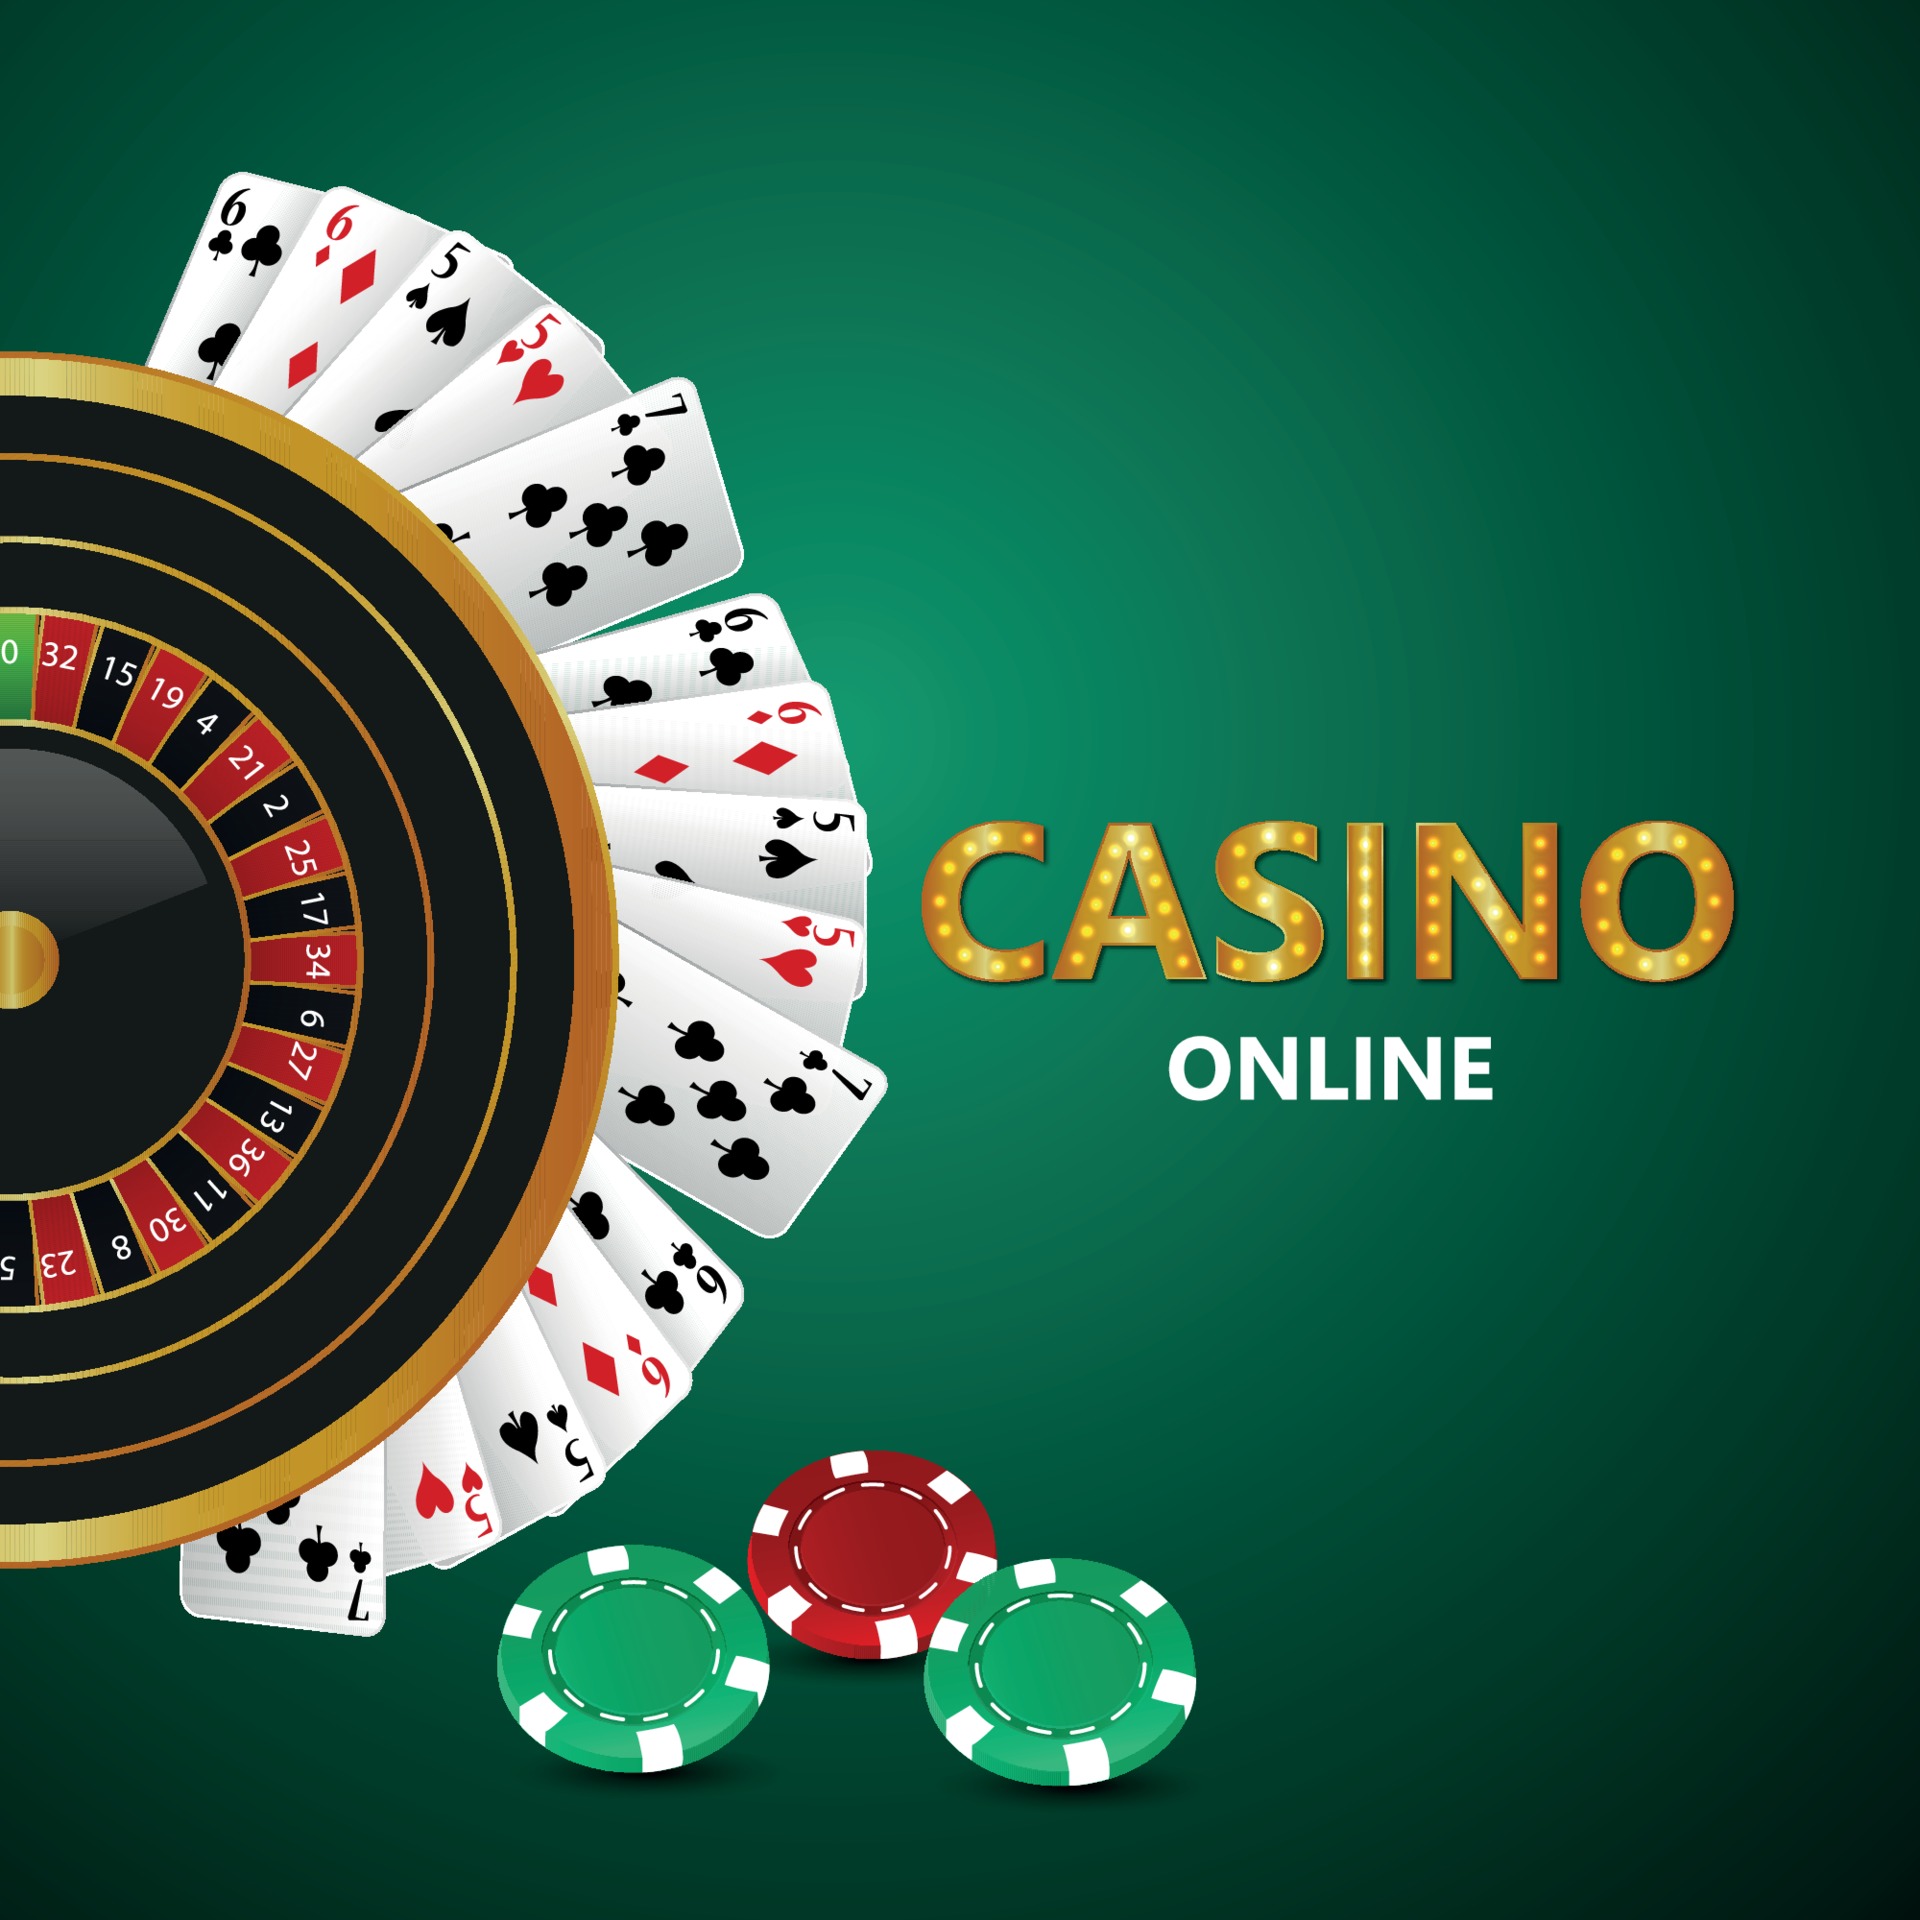 Jogo de casino online com texto dourado e máquina de roleta